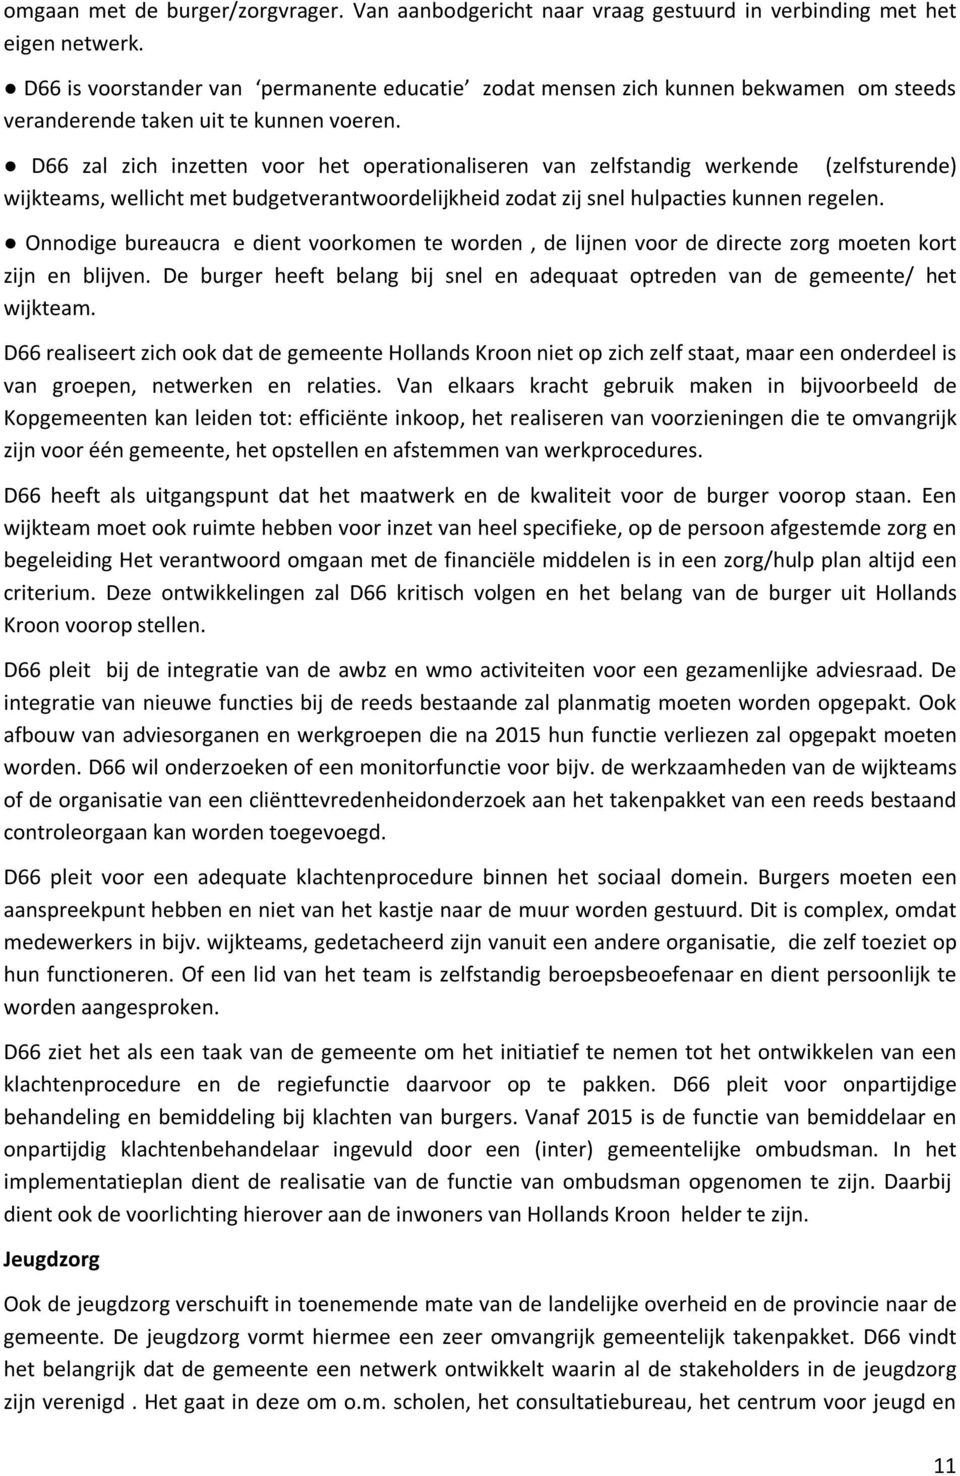 D66 zal zich inzetten voor het operationaliseren van zelfstandig werkende (zelfsturende) wijkteams, wellicht met budgetverantwoordelijkheid zodat zij snel hulpacties kunnen regelen.